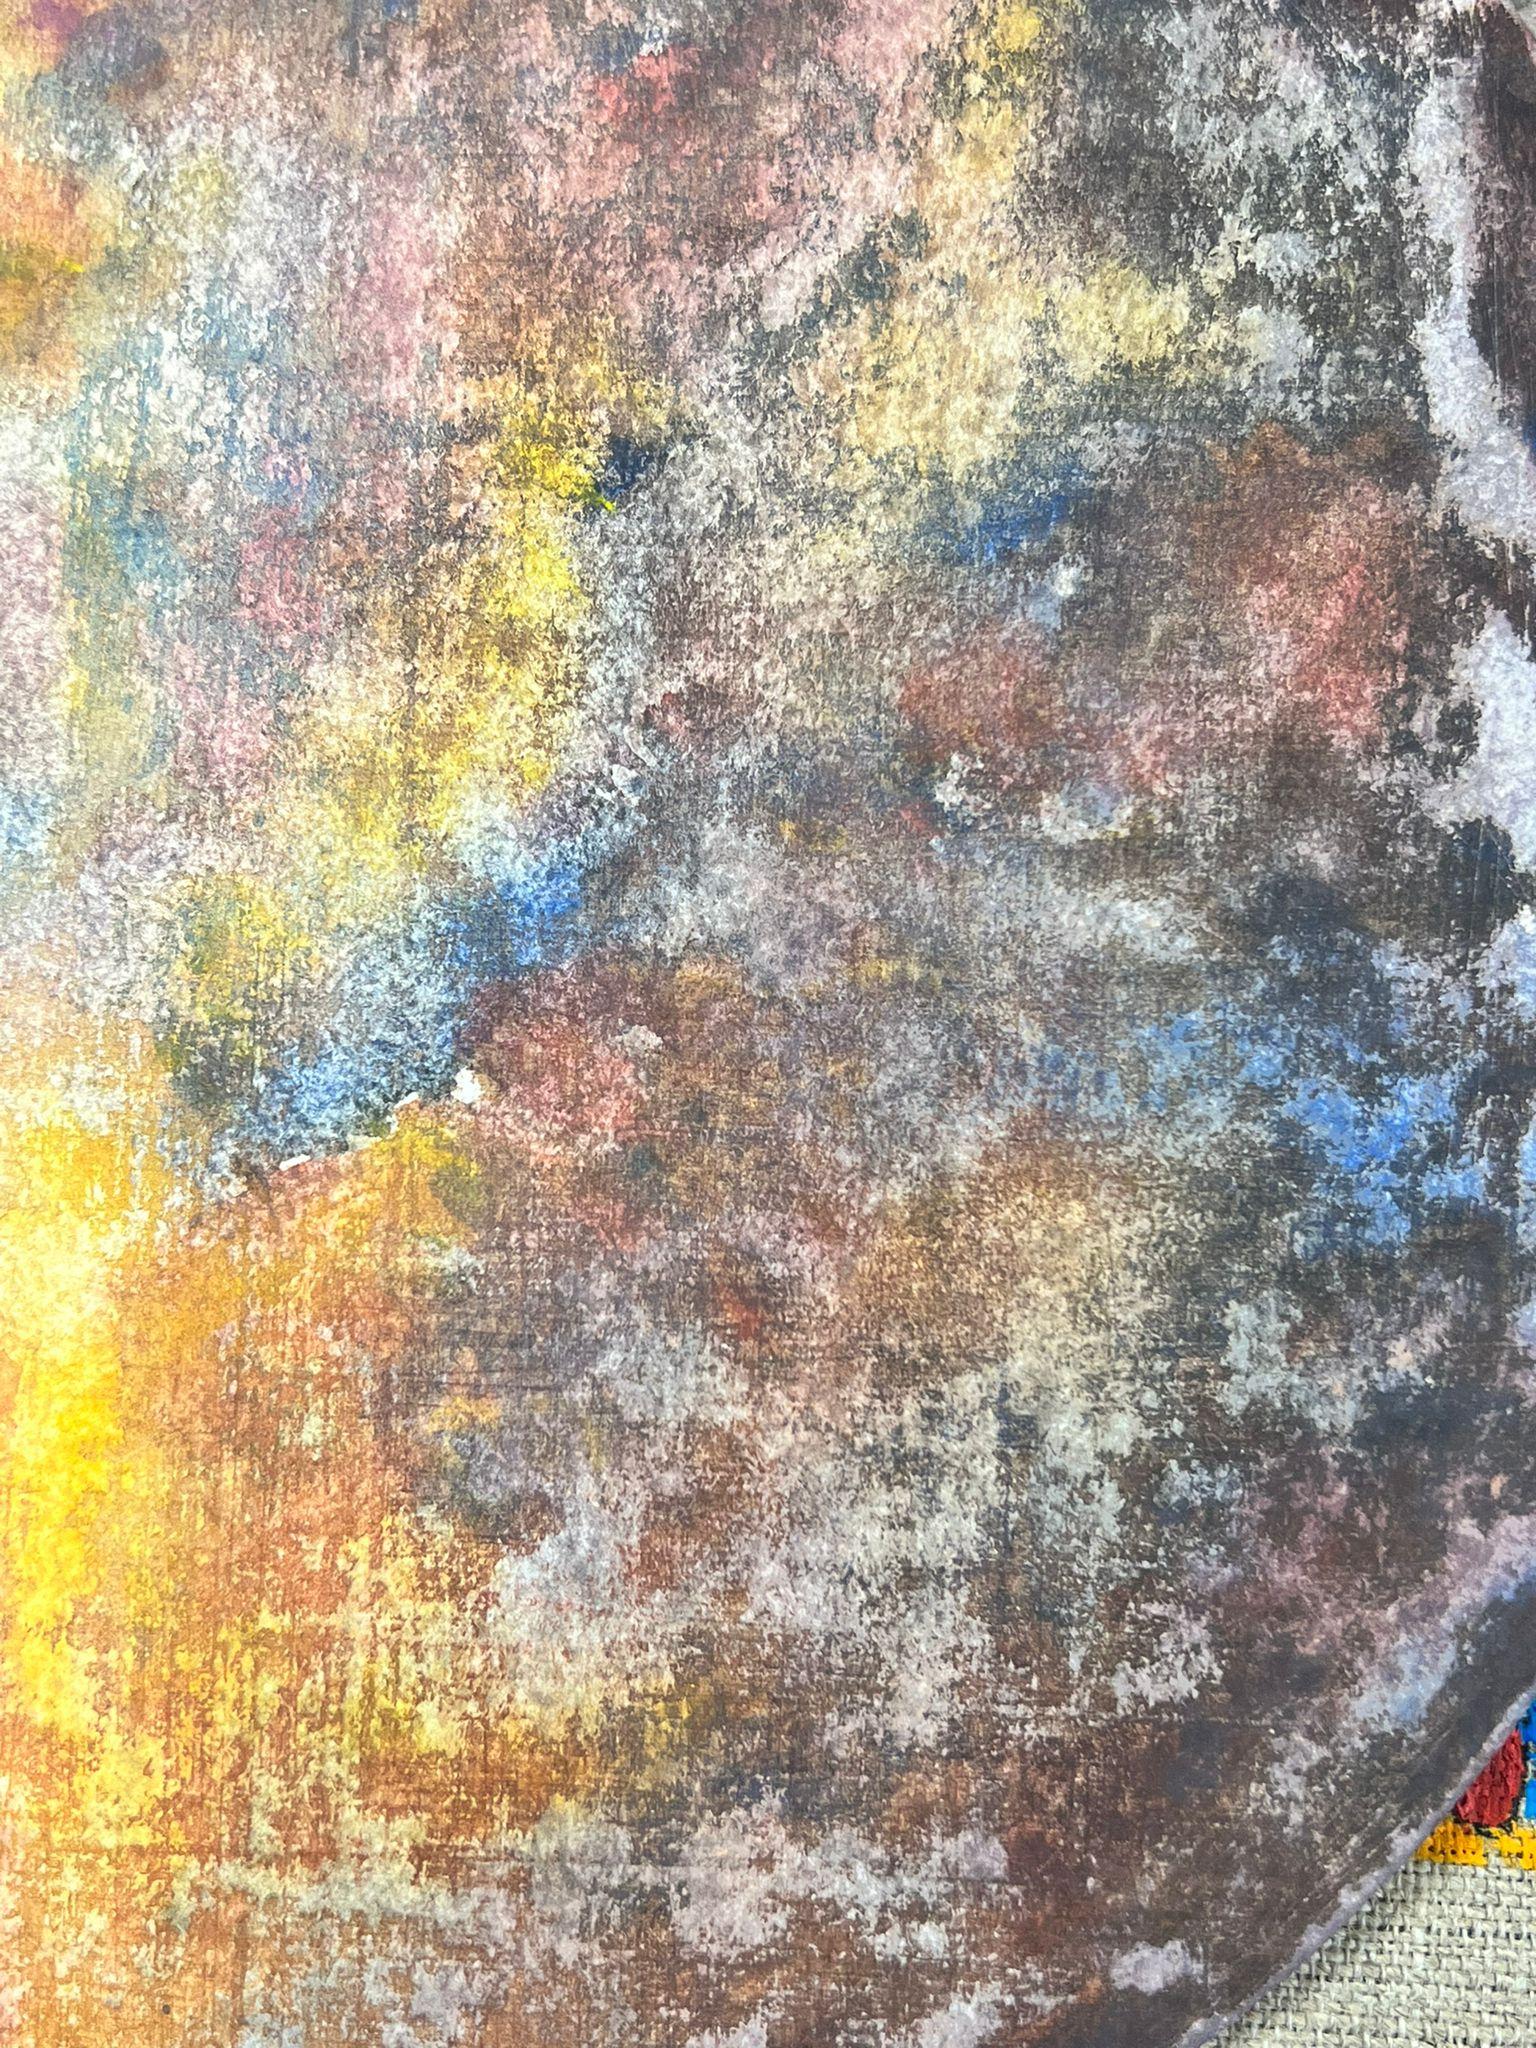 Abstrakt-expressionistische Komposition
von Jacques COULAIS (1955-2011)
Gouache-Malerei auf Papier/Karte
ungerahmt: 9 x 9 Zoll
Zustand: sehr gut und beeindruckend
Provenienz: Alle Gemälde, die wir von diesem Künstler zum Verkauf anbieten, stammen